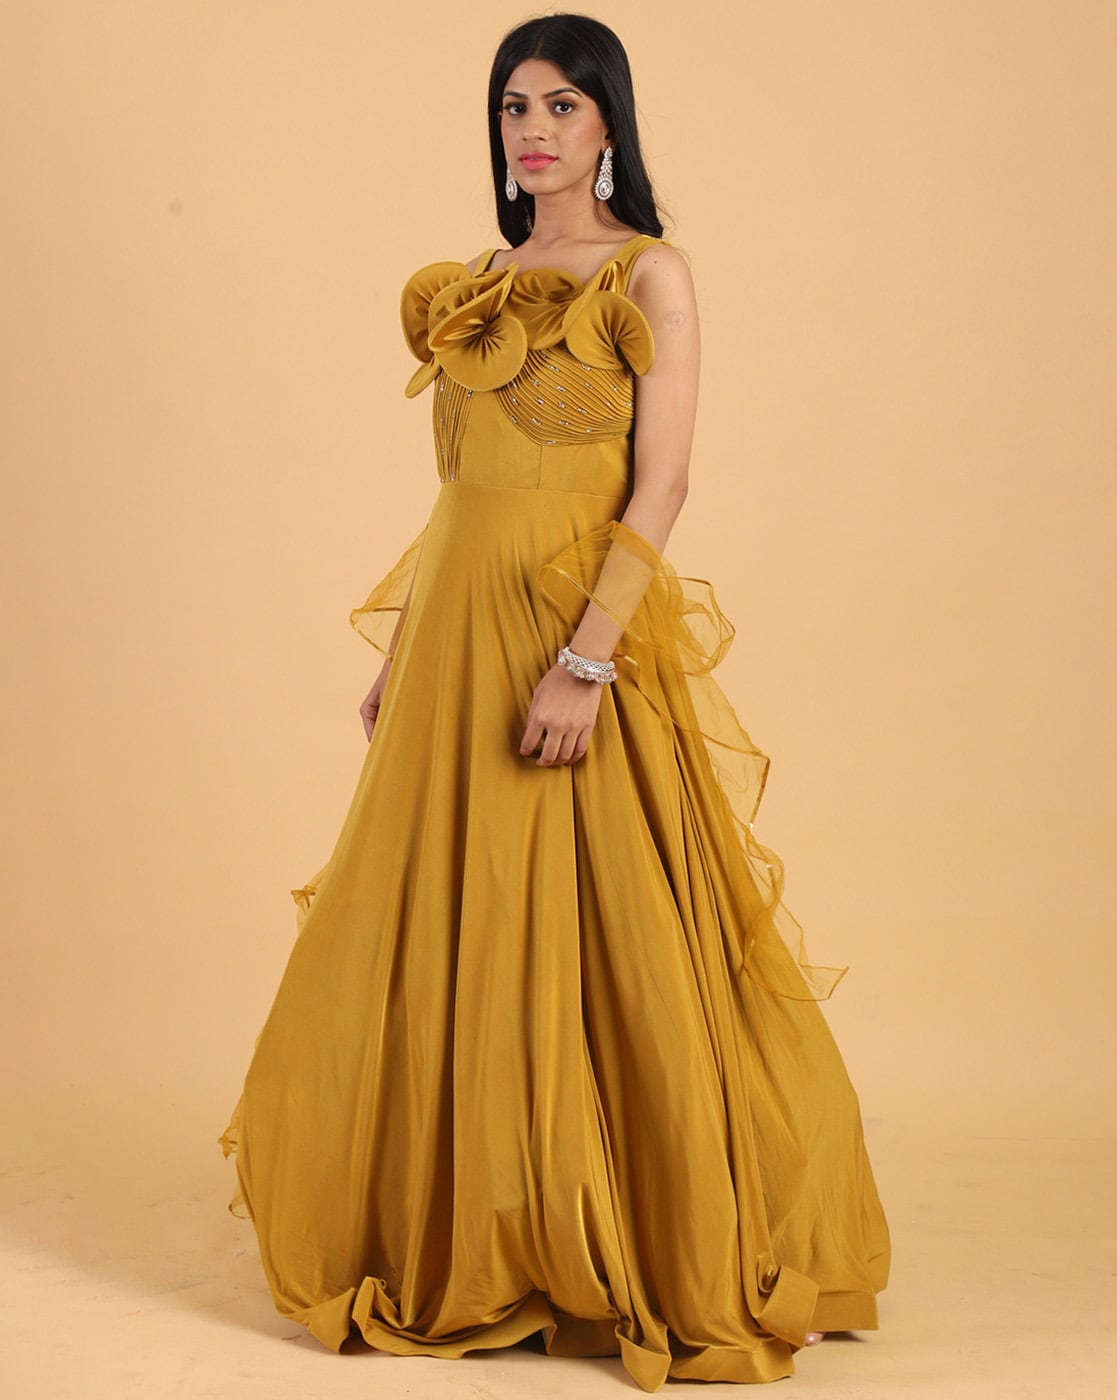 mustard yellow | Fashion, Beautiful dresses, Dress